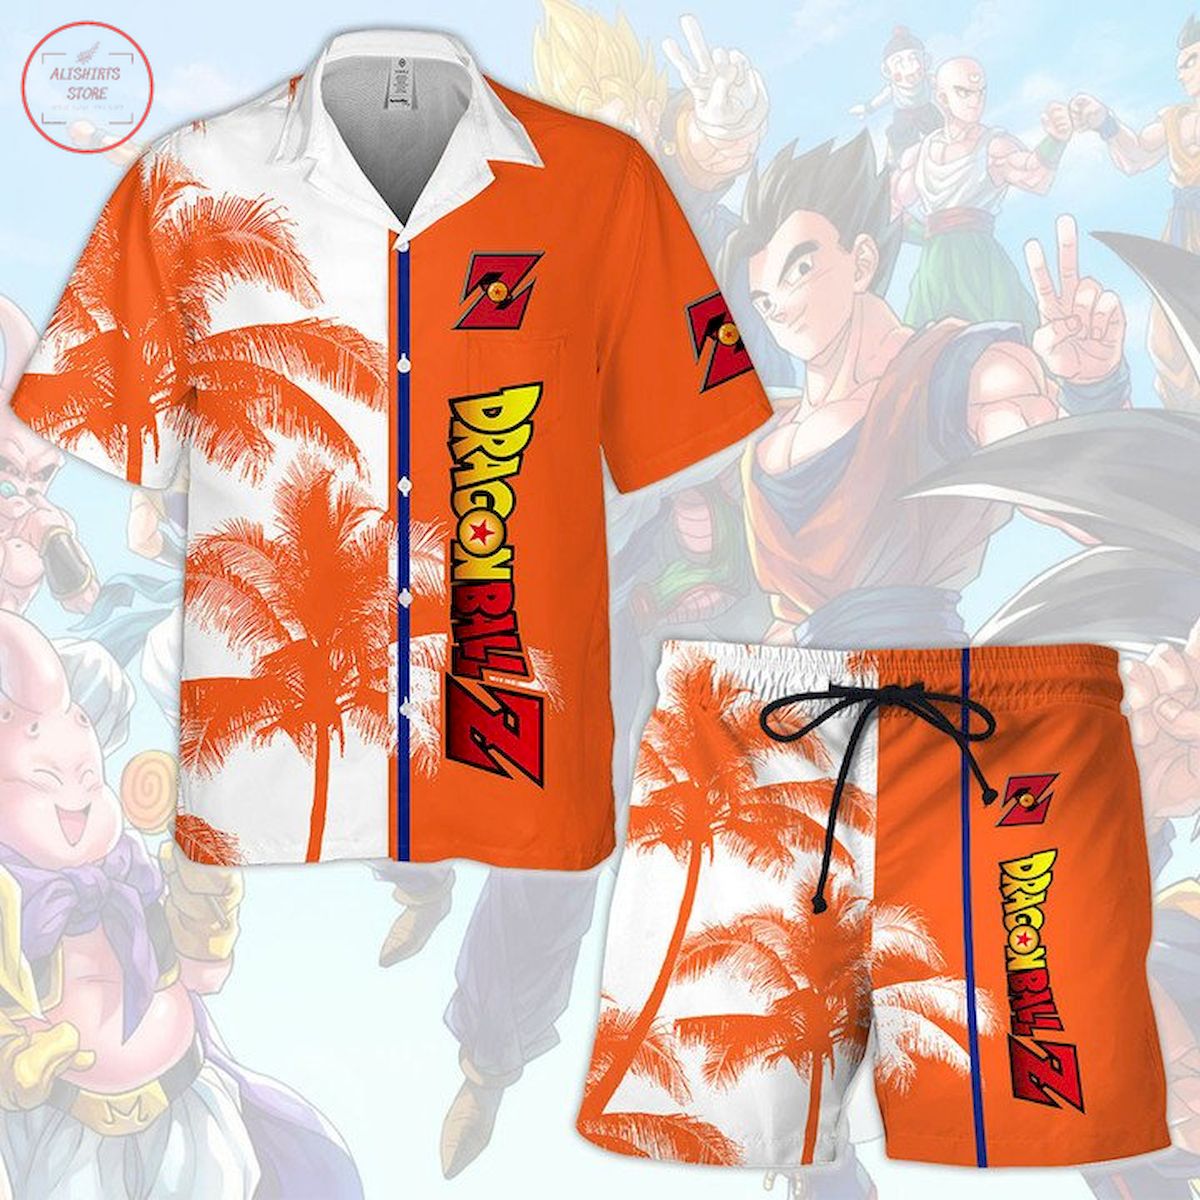 DragonBall Z Hawaiian Shirt and Shorts